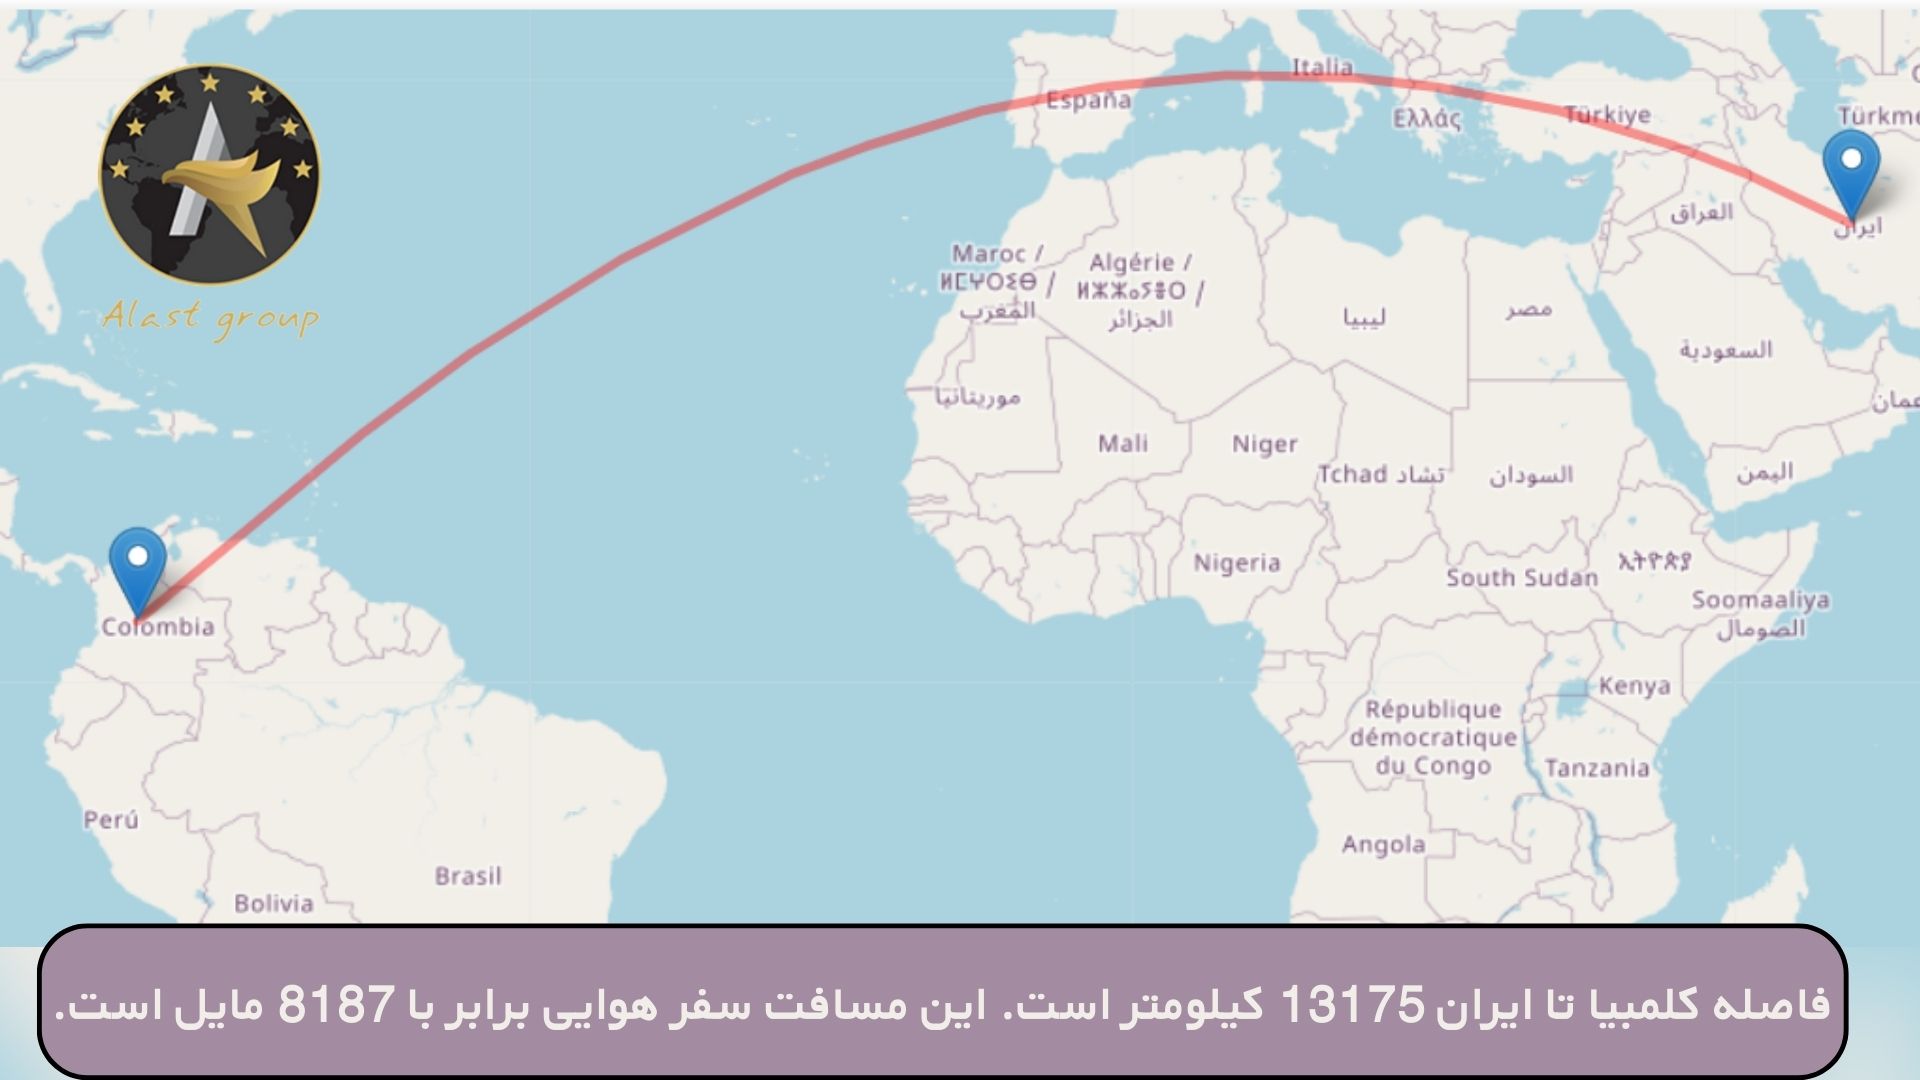 فاصله کلمبیا تا ایران 13175 کیلومتر است. این مسافت سفر هوایی برابر با 8187 مایل است.